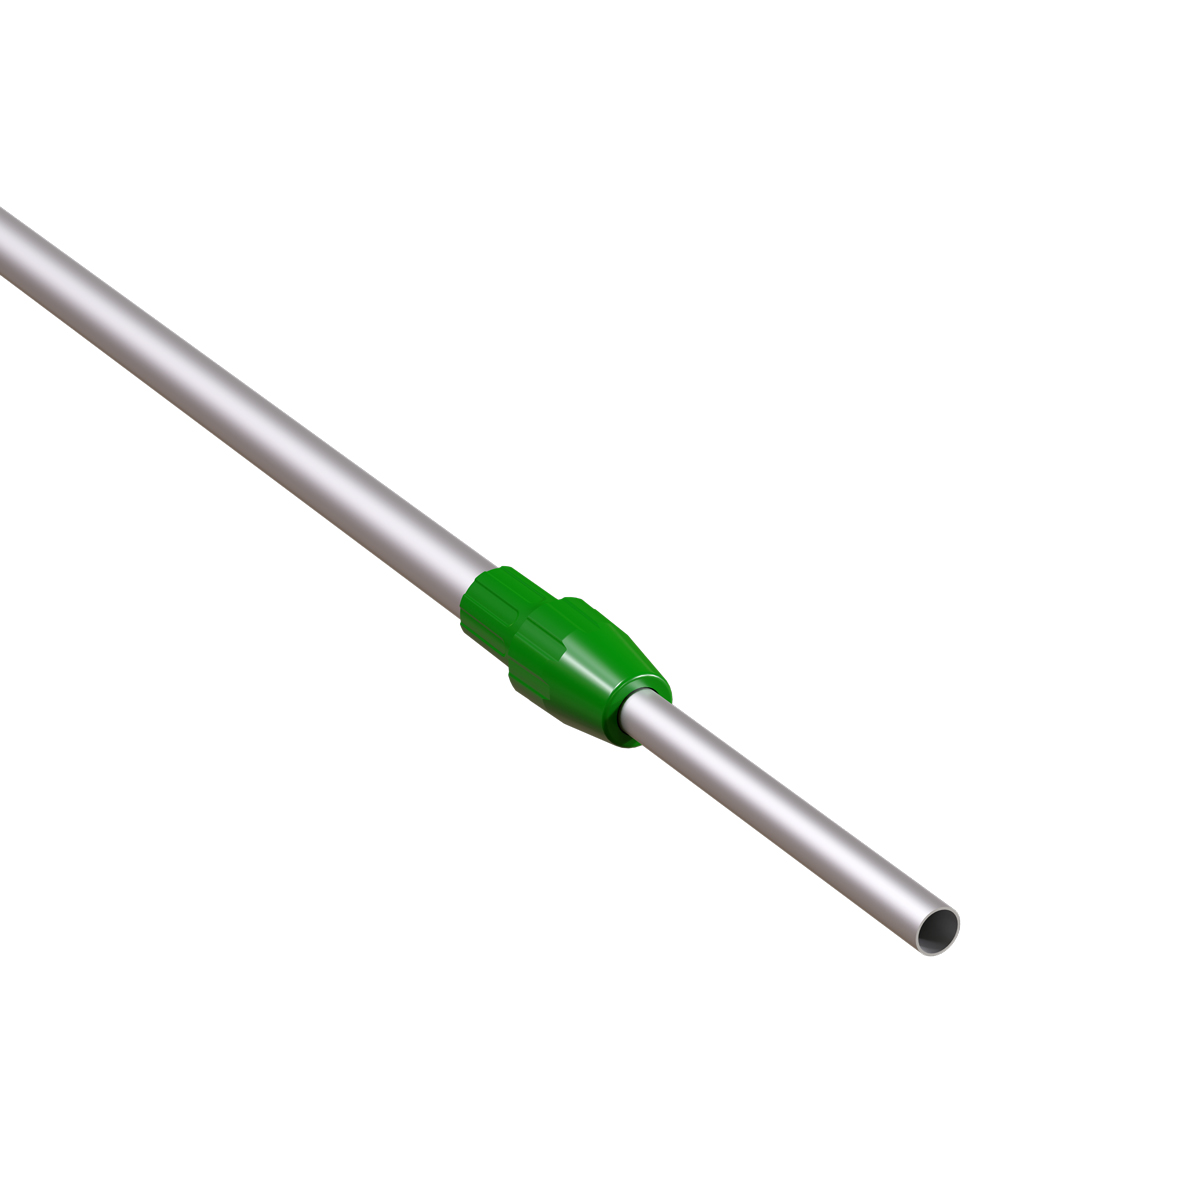 Трубка алюминиевая телескопическая TEL-LOCK-ALUTUBE 350-550 мм, трубка серая, переходник зеленый